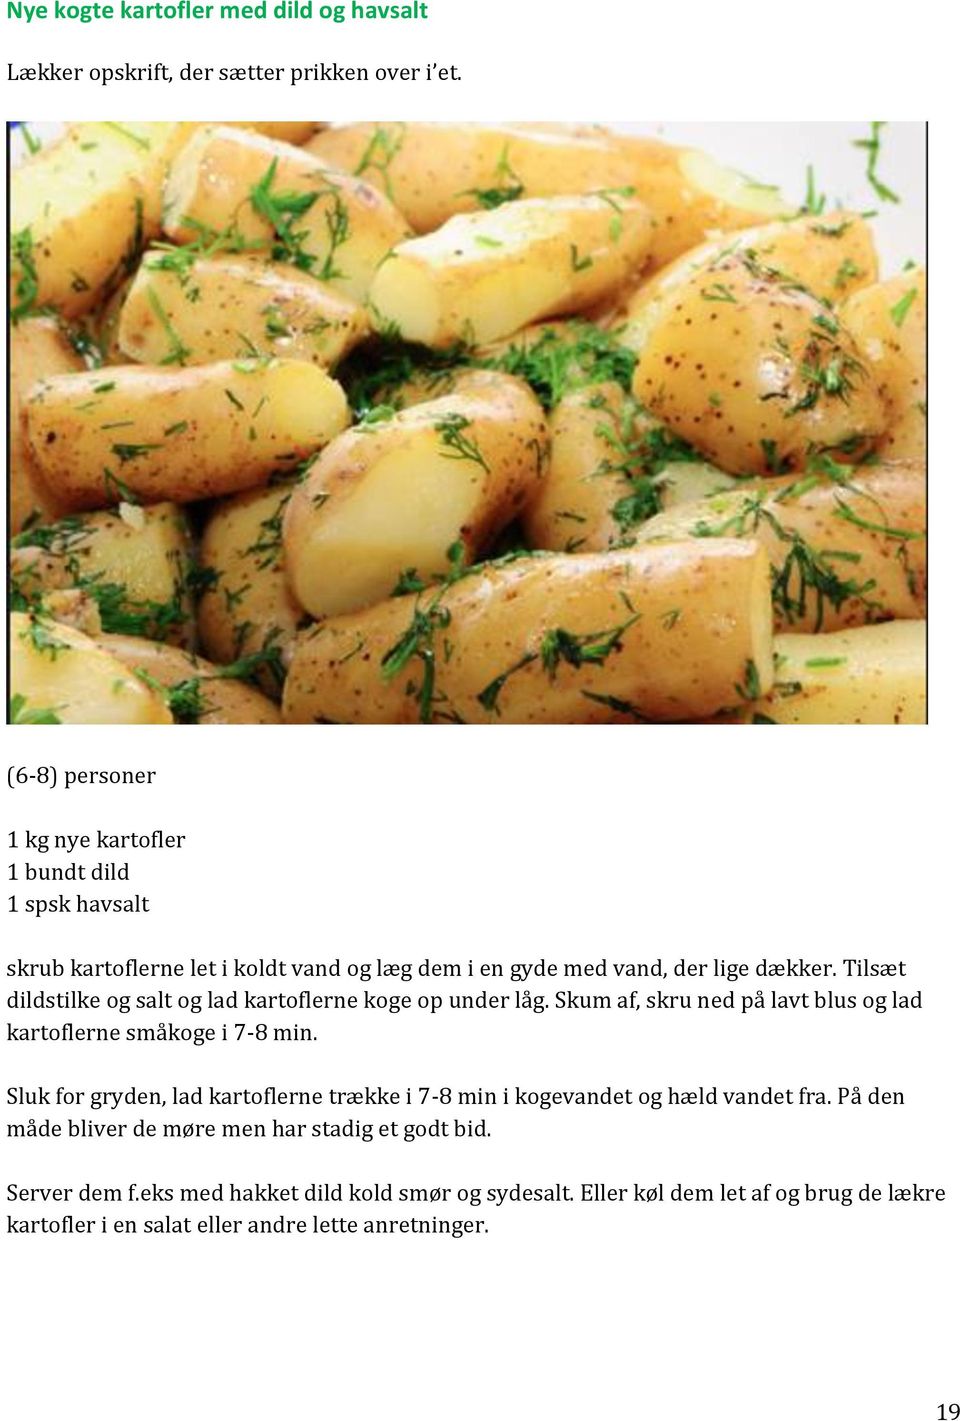 Kartoffelbog foder Skjoldhøjvej 8471 Sabro - PDF Gratis download